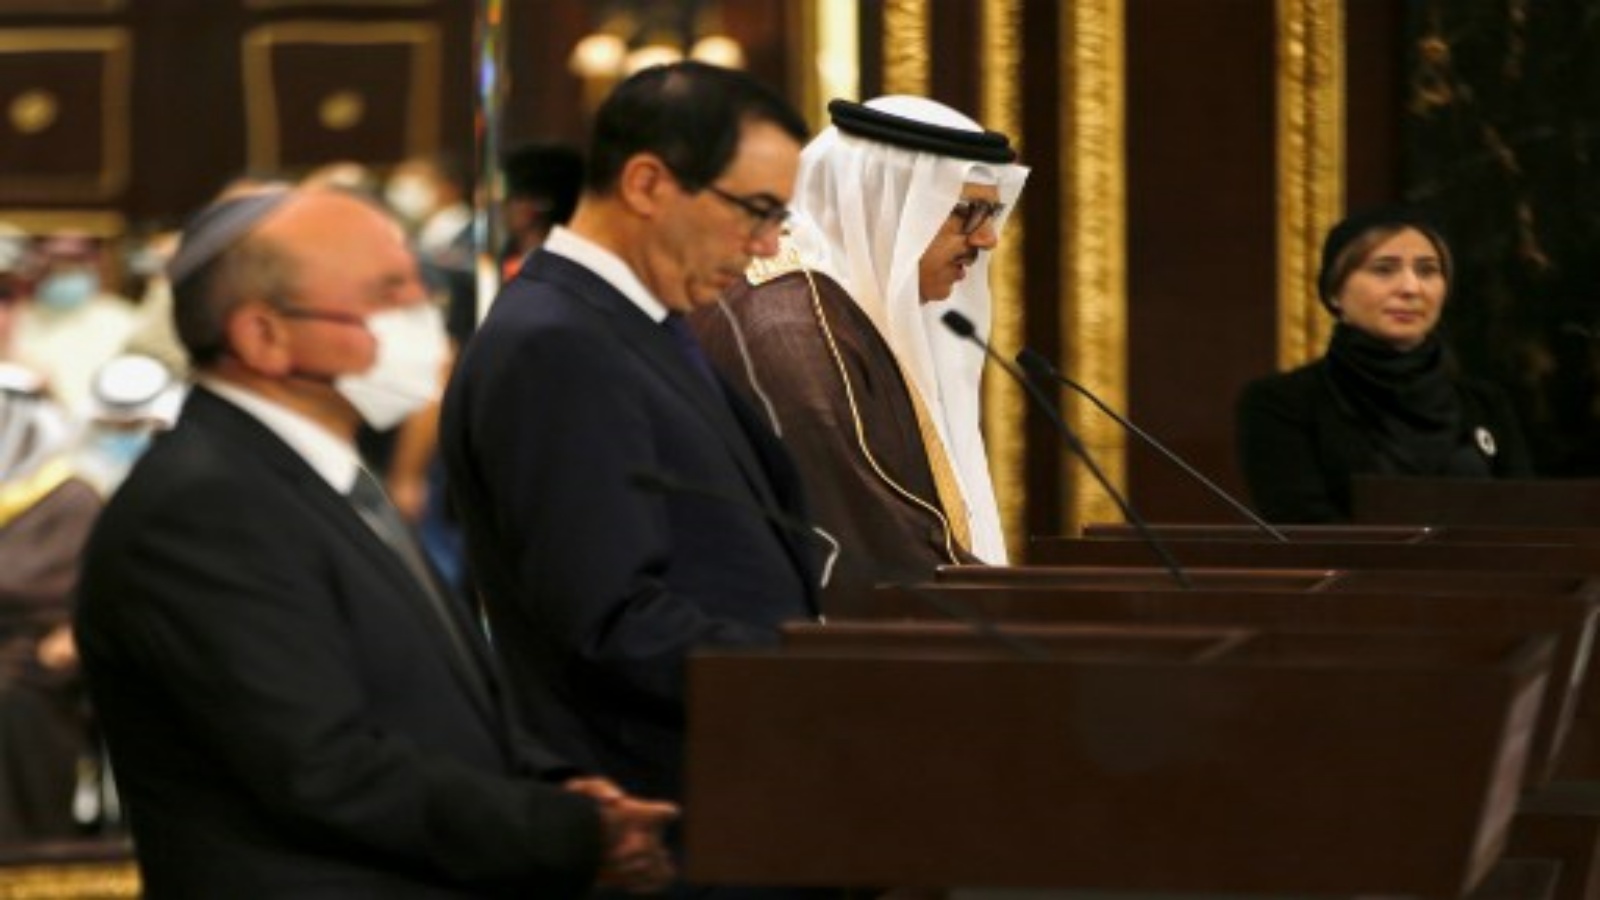 وزير الخارجية البحريني عبد اللطيف بن راشد الزياني يتحدث في مؤتمر صحفي مشترك مع رئيس الوفد الإسرائيلي مستشار الأمن القومي مئير بن شبات (إلى اليسار) ووزير الخزانة الأمريكي ستيف منوشين ، بعد حفل توقيع اتفاقية في العاصمة البحرينية المنامة ، في أكتوبر 18 2020